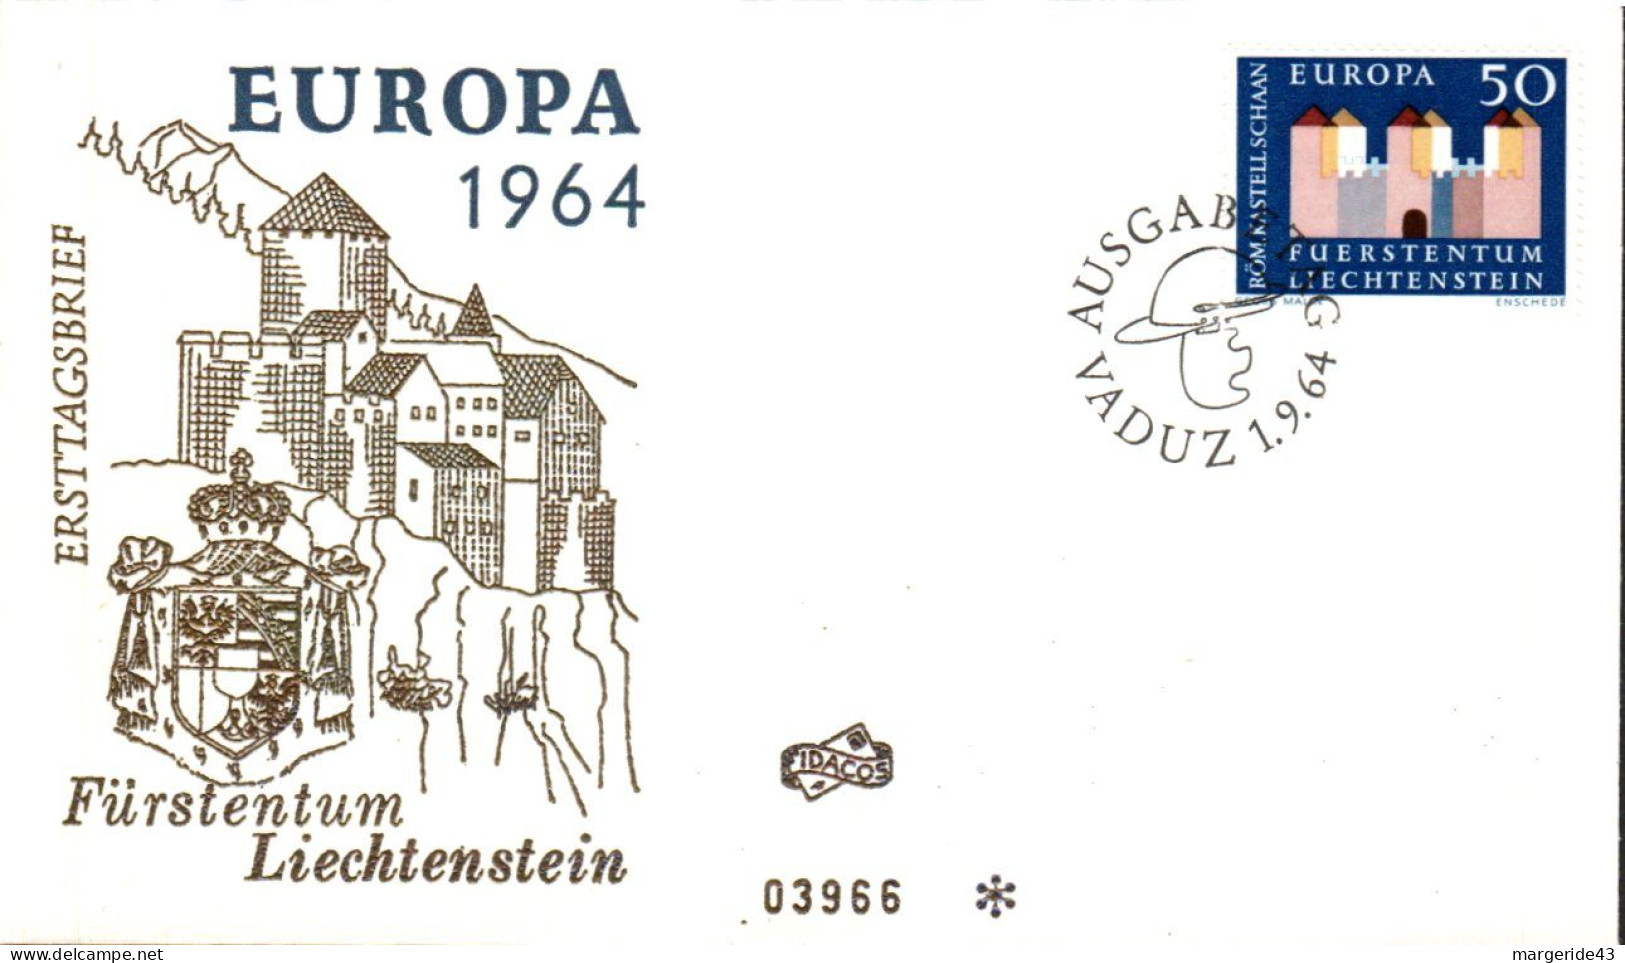 EUROPA 1964 LIECHTENSTEIN FDC - 1964